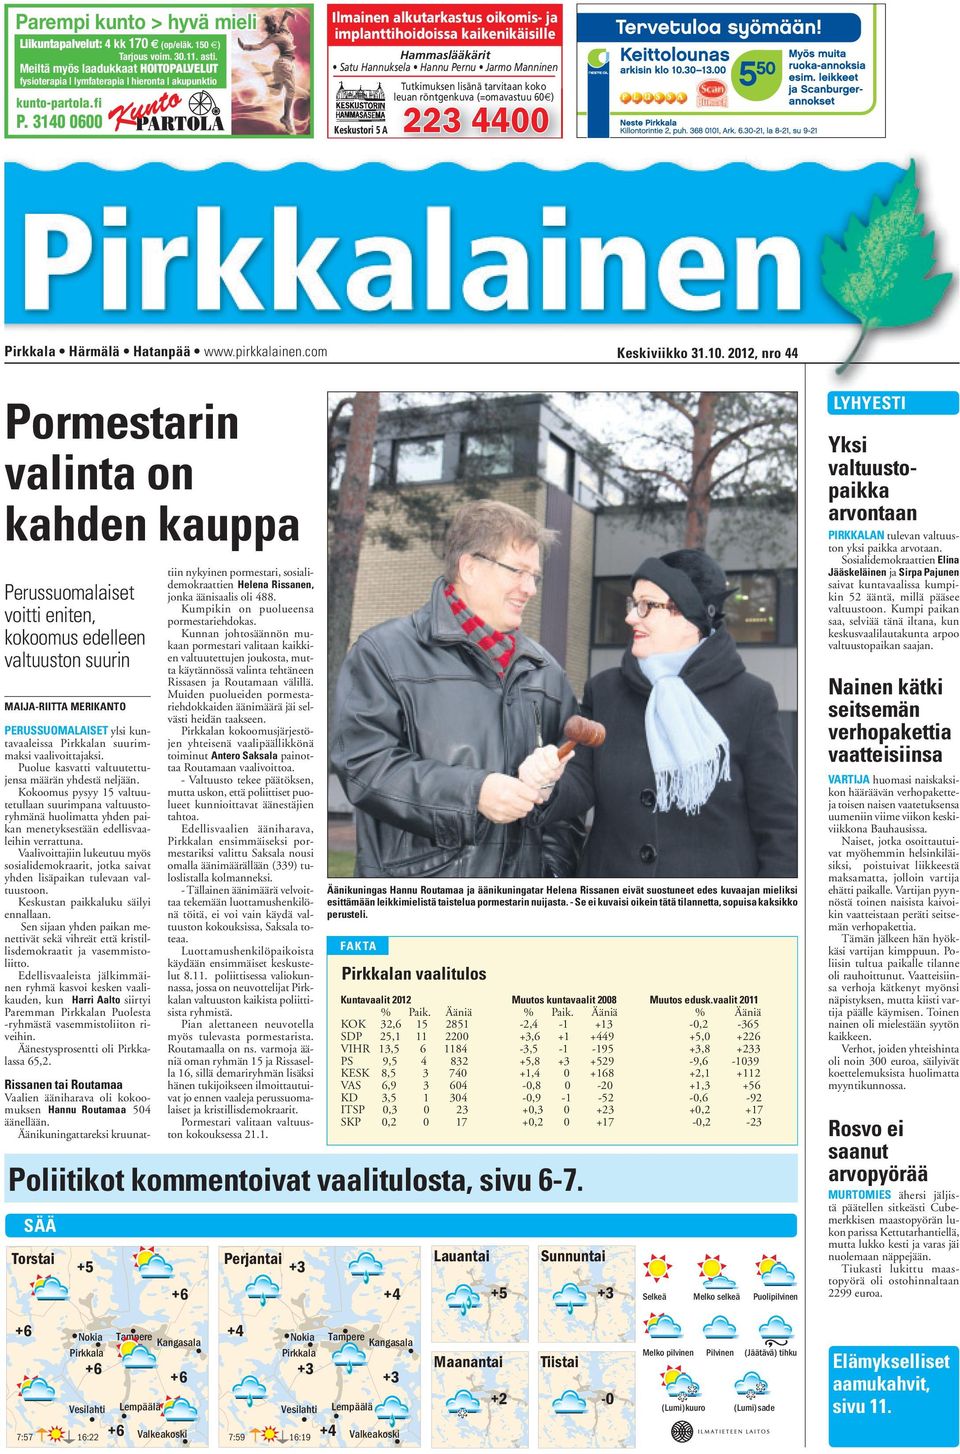 Pirkkala Härmälä Hatanpää www.pirkkalainen.com Keskiviikko 31.10.